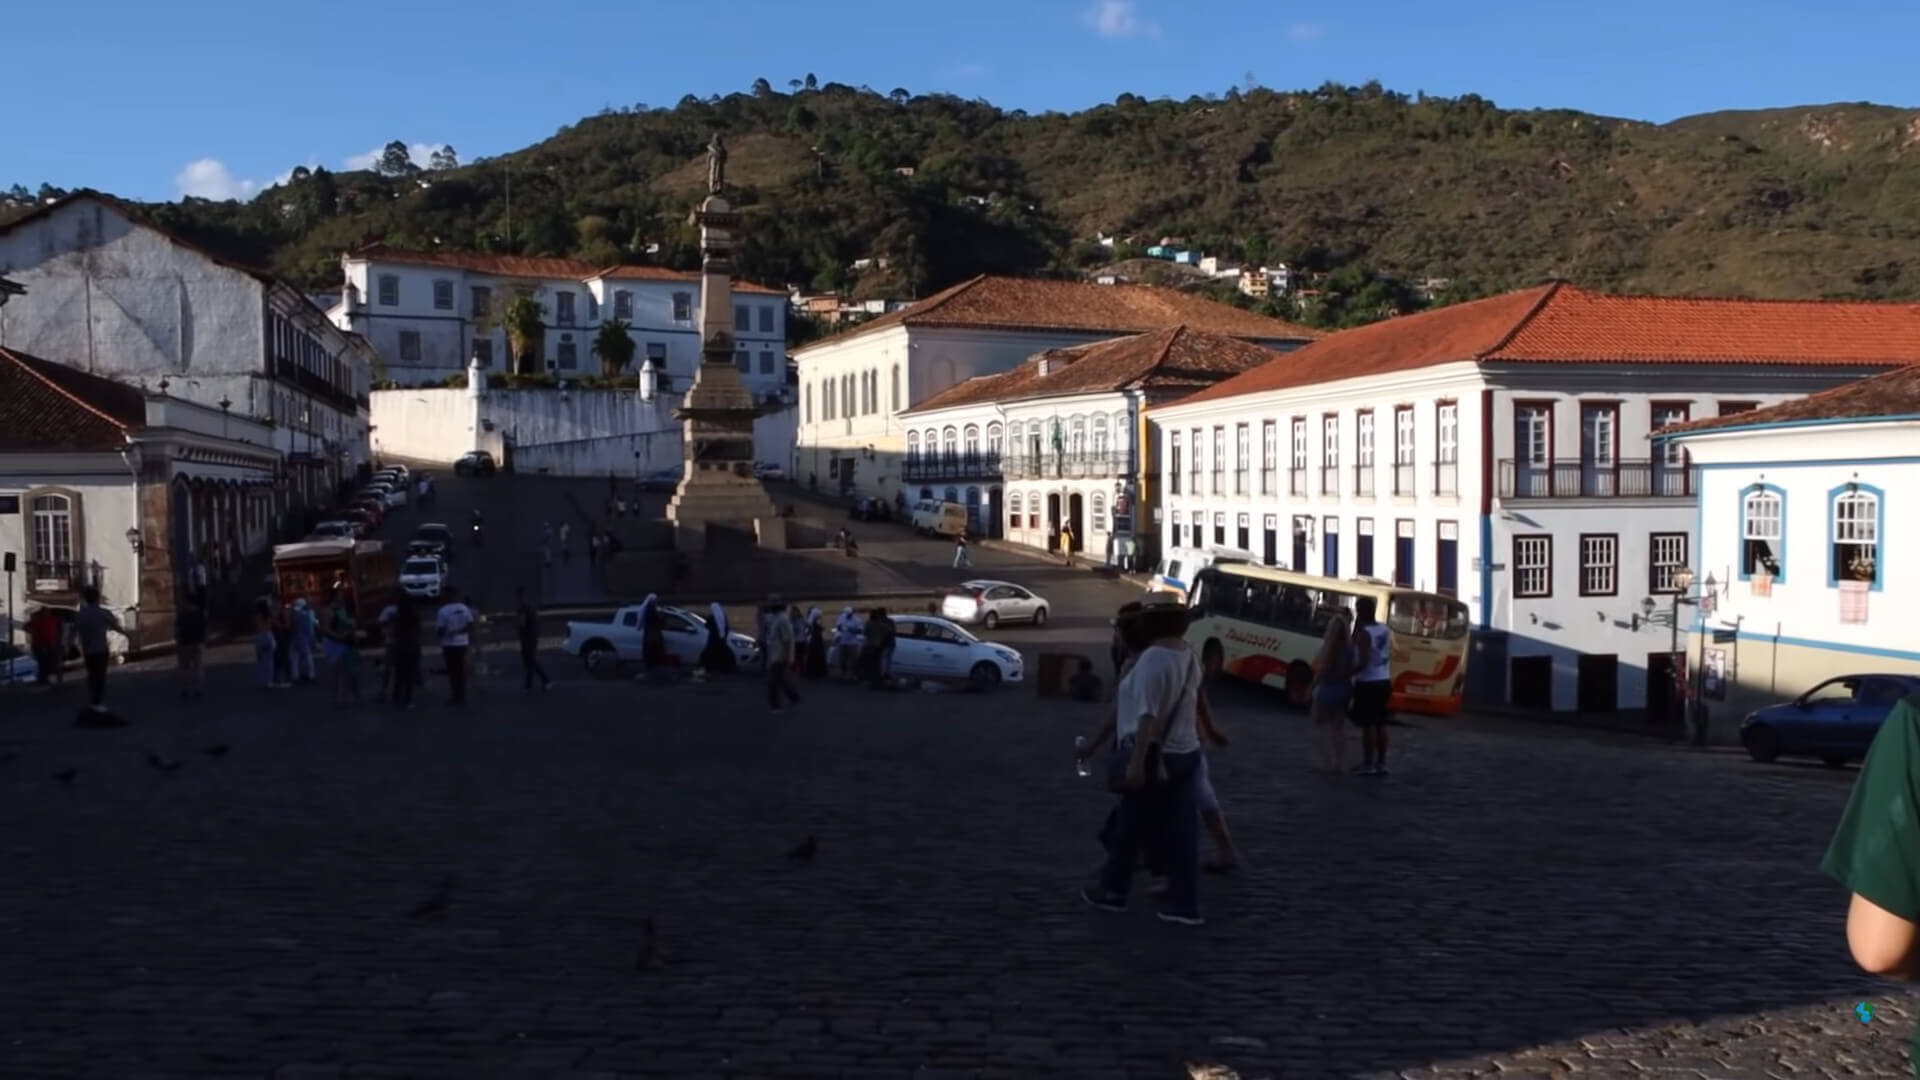 Ouro Preto, de onvergetelijke stad in Minas Gerais